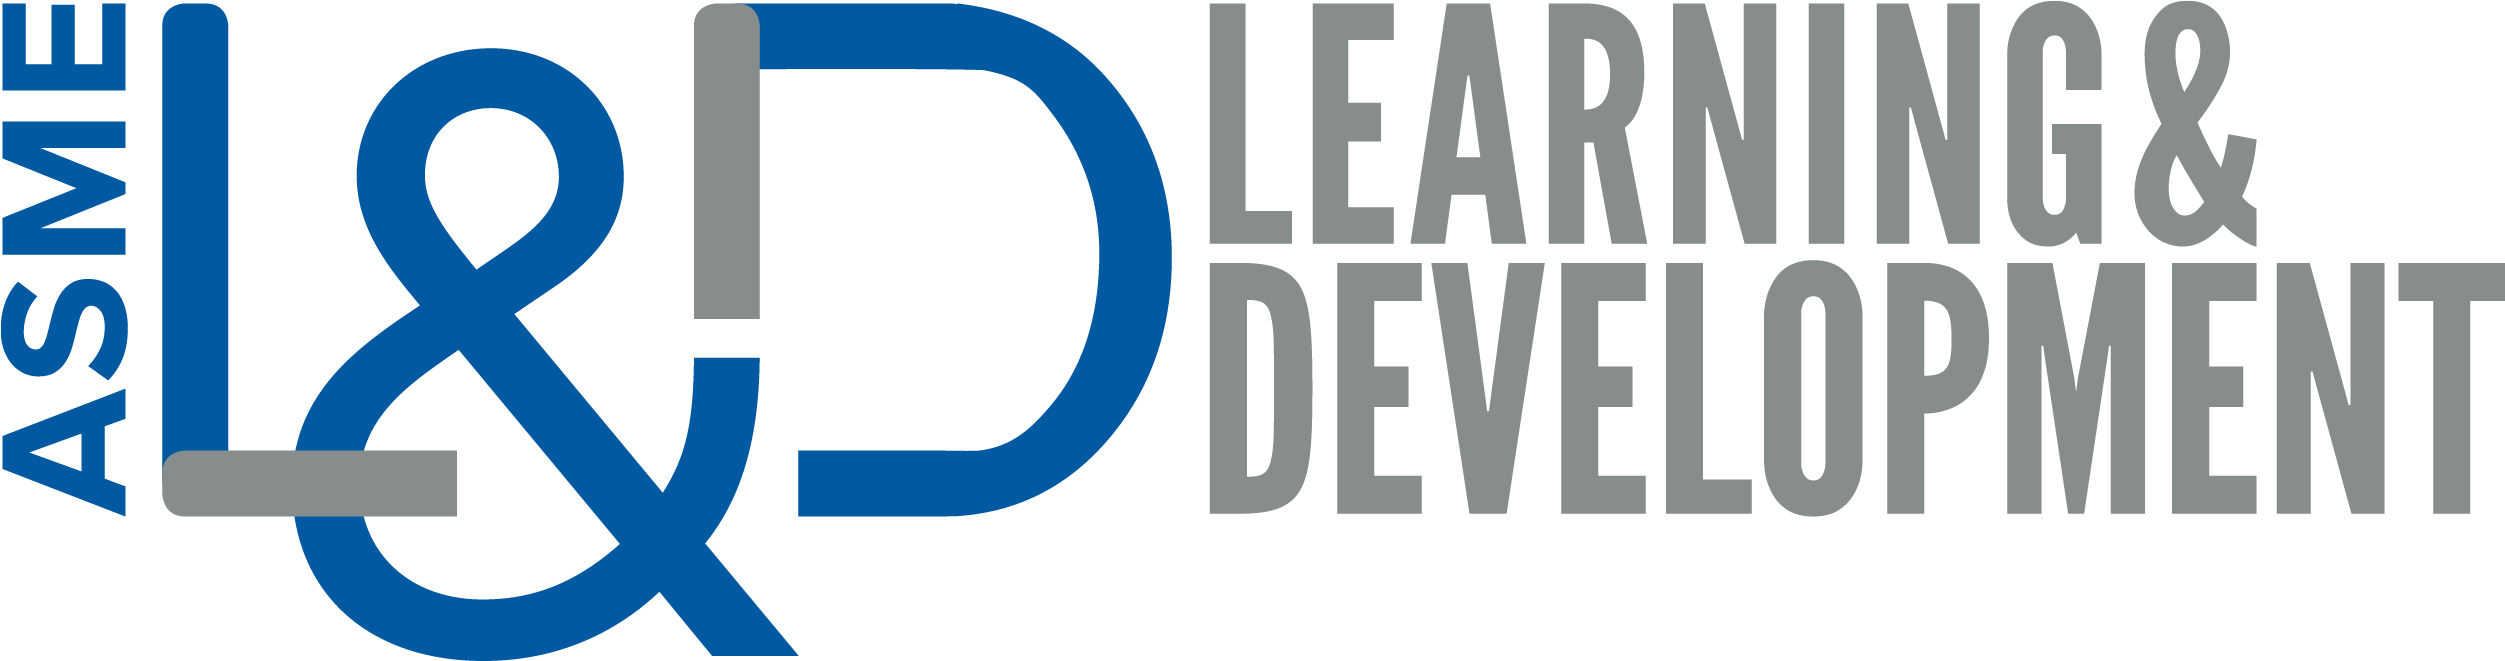 ASME Learning & Development Logo